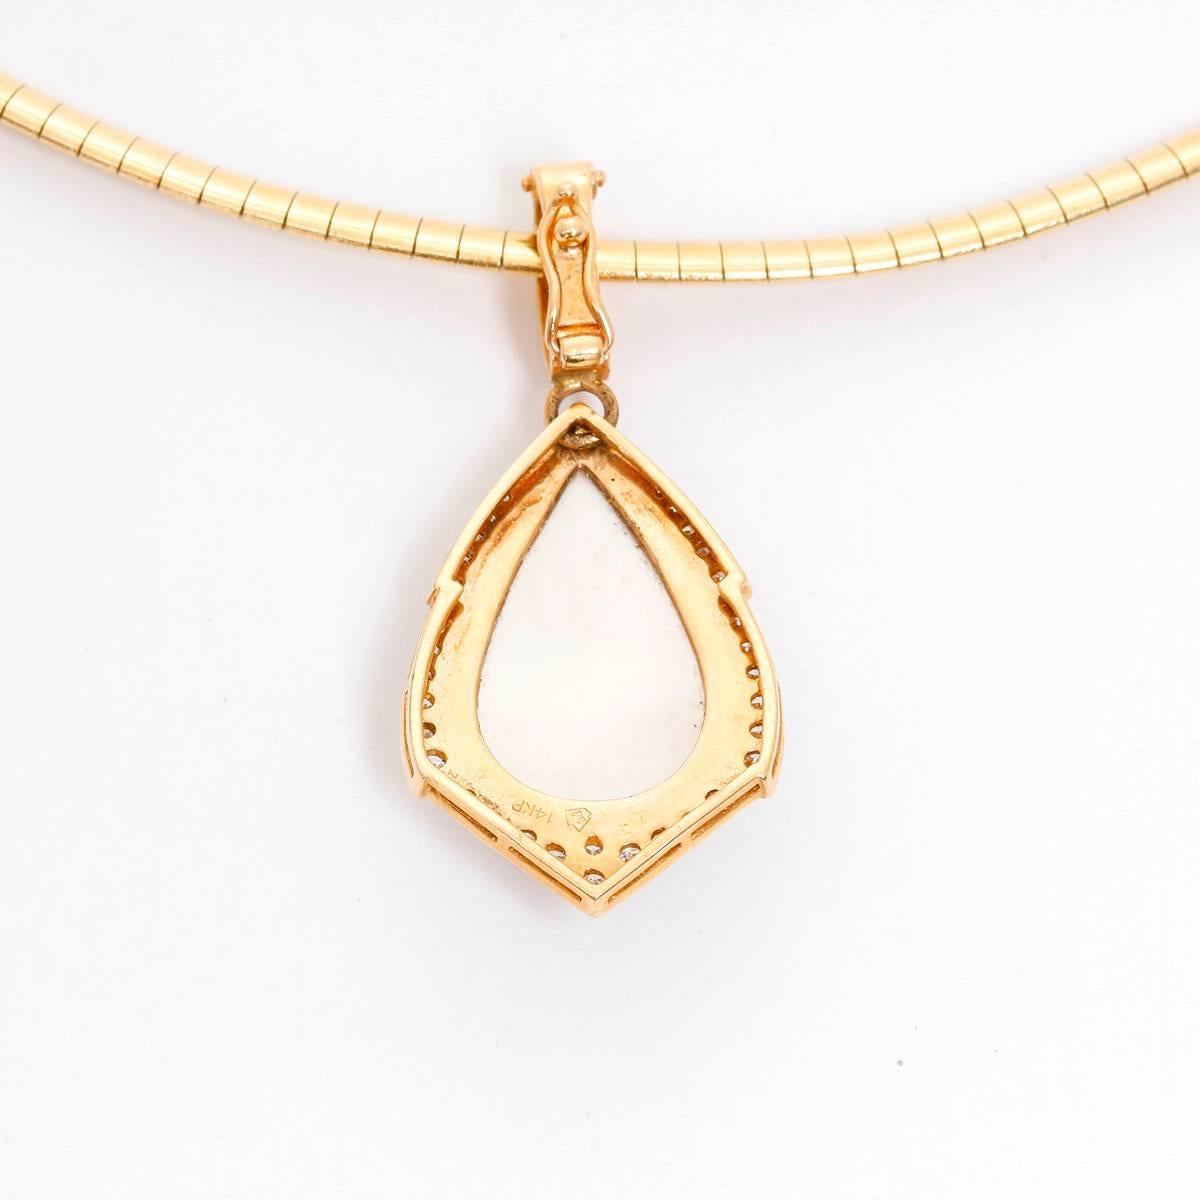 Perlmutt- und Diamant-Halskette - . Italienische Gliederkette aus 14 Karat Gelbgold mit einem tropfenförmigen Perlmutt-Anhänger, umgeben von runden Brillanten. Länge der Halskette 16 Zoll.  Gesamtgewicht 22.2 Gramm.